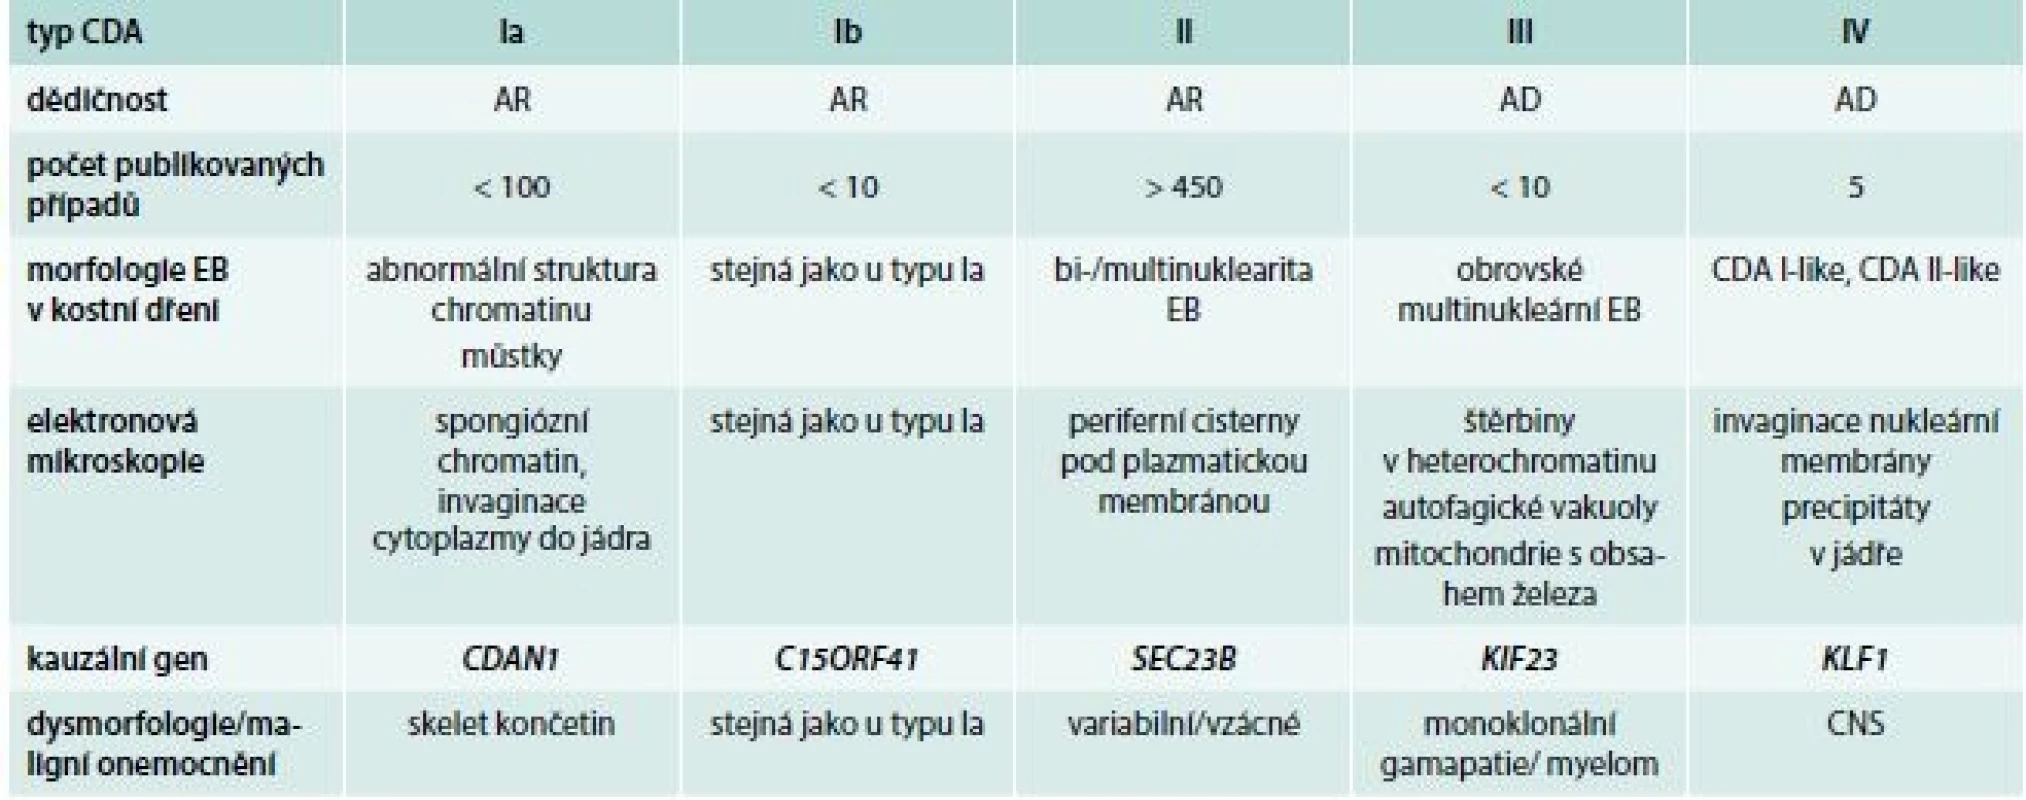 Charakteristiky podtypů kongenitální dyserytropoetické anémie